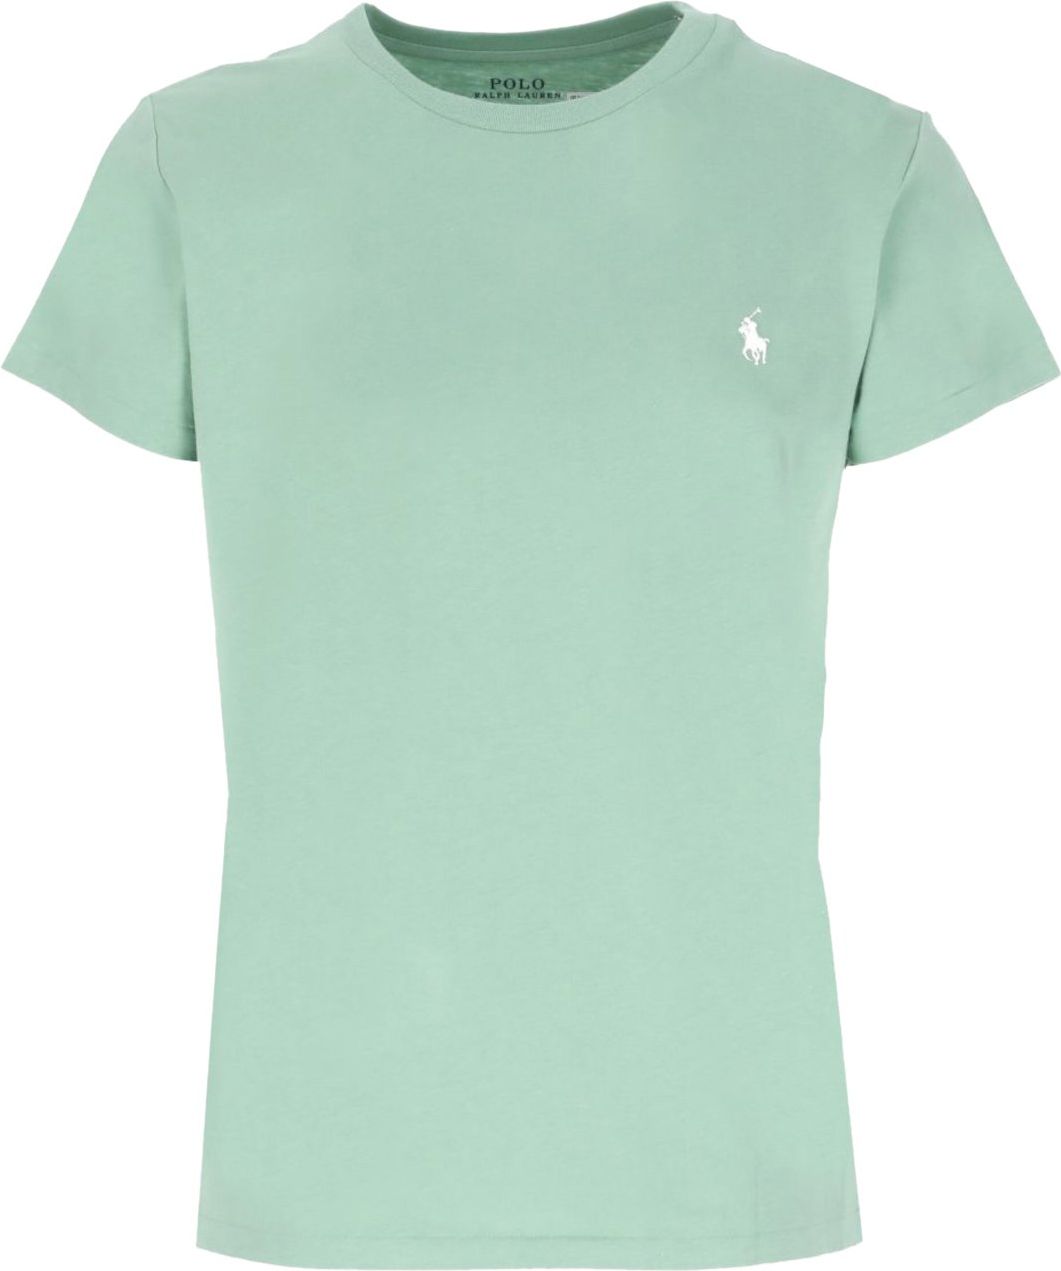 Ralph Lauren T-shirt Groen Groen